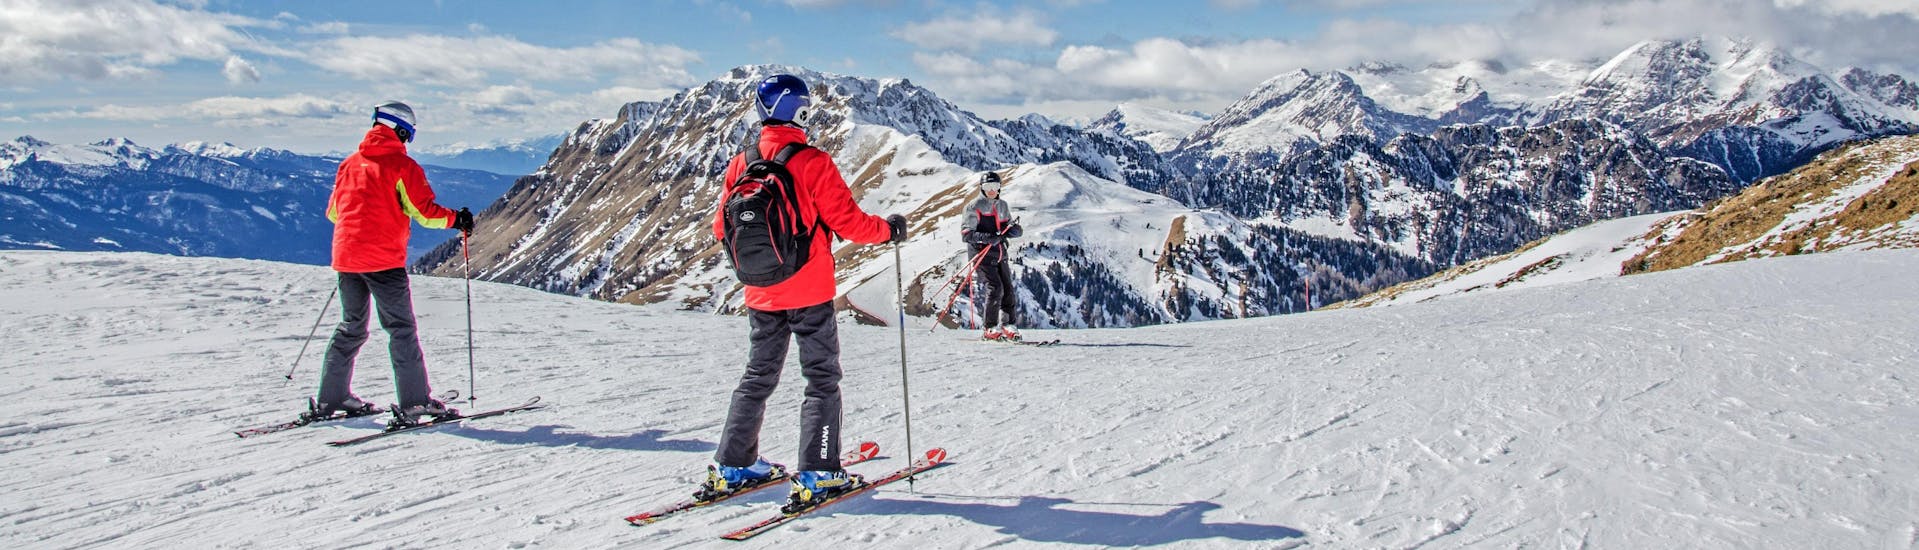 Skifahrer genießen das atemberaubende Panorama des Val di Fiemme, wo die örtlichen Skischulen ihre Skikurse anbieten.